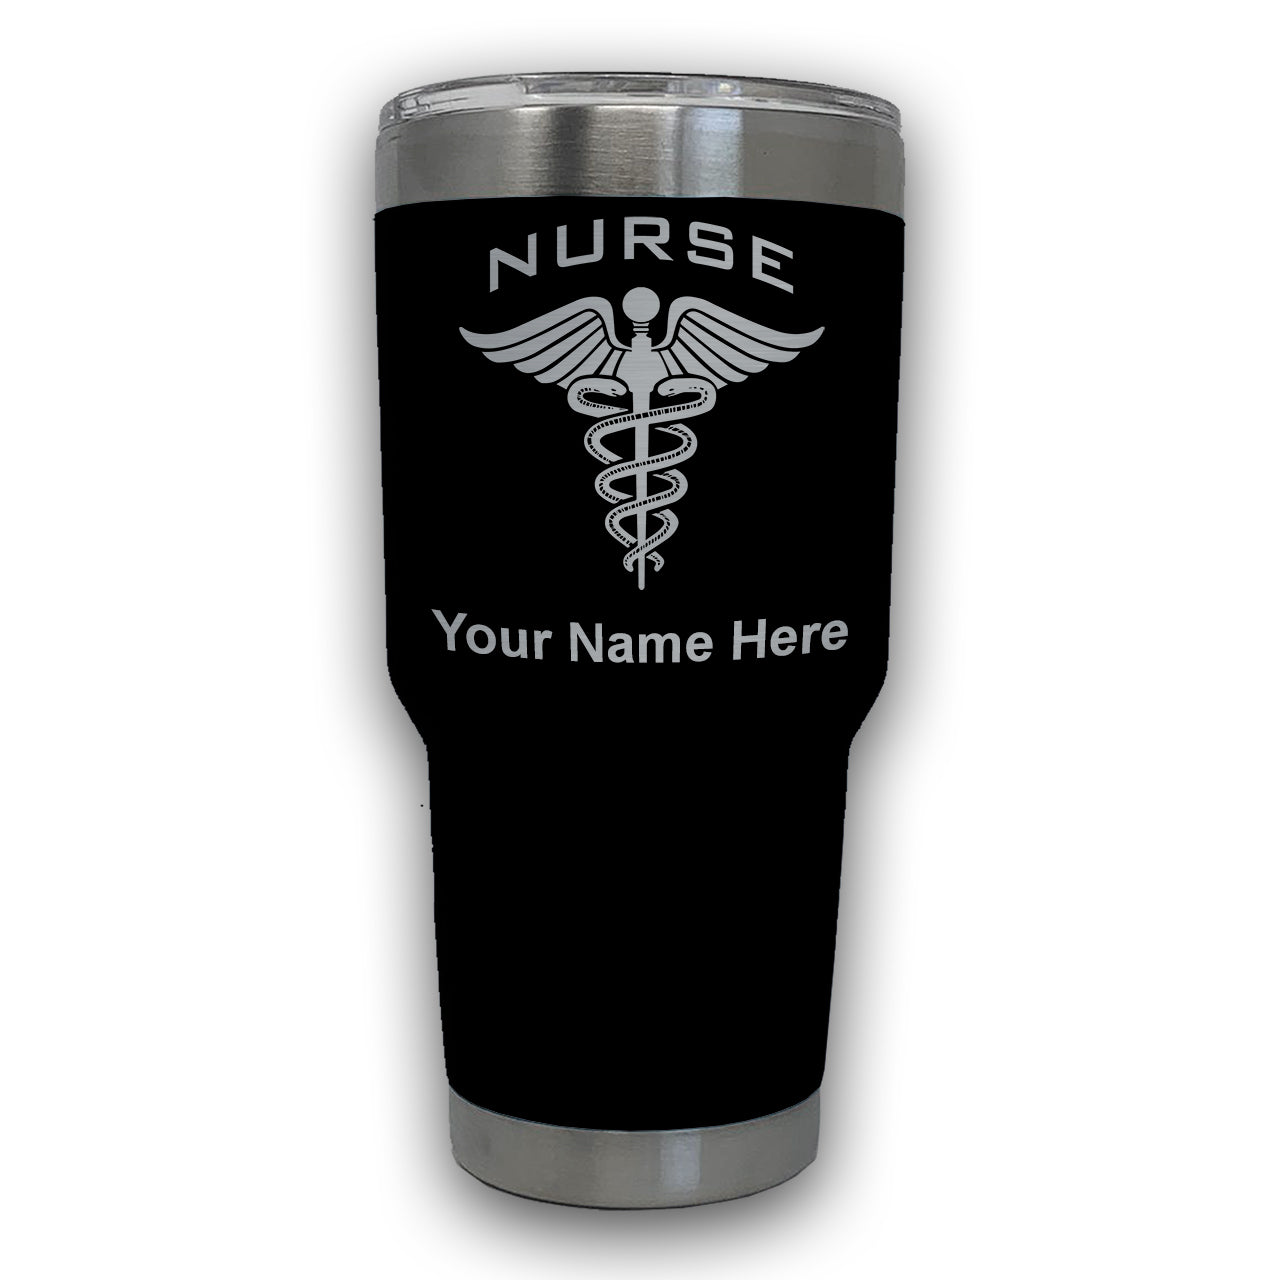 LaserGram 30oz Tumbler Mug, Nurse, Personalized Engraving Included